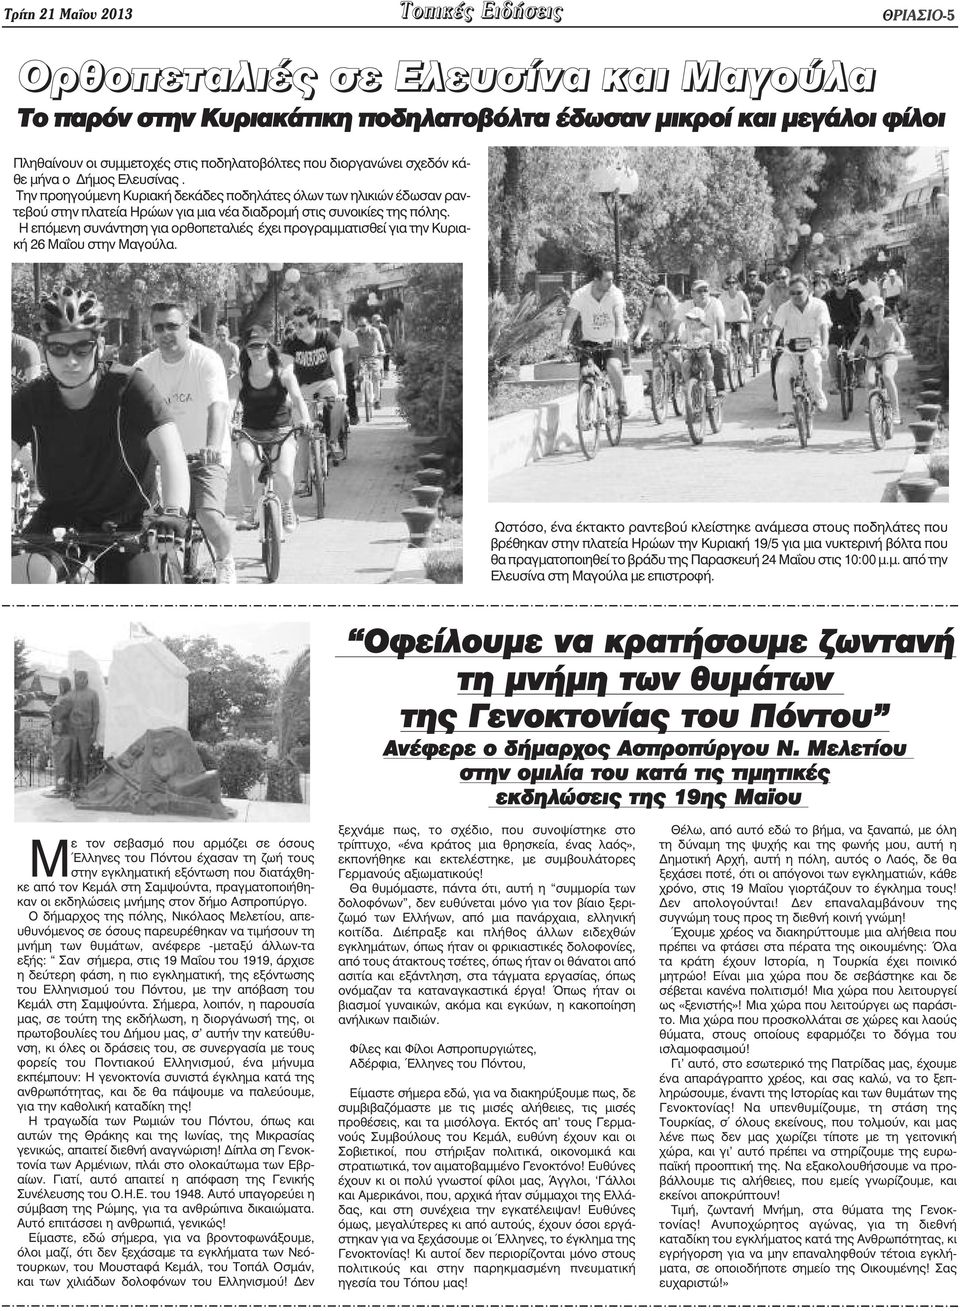 Την προηγούµενη Κυριακή δεκάδες ποδηλάτες όλων των ηλικιών έδωσαν ραντεβού στην πλατεία Ηρώων για µια νέα διαδροµή στις συνοικίες της πόλης.